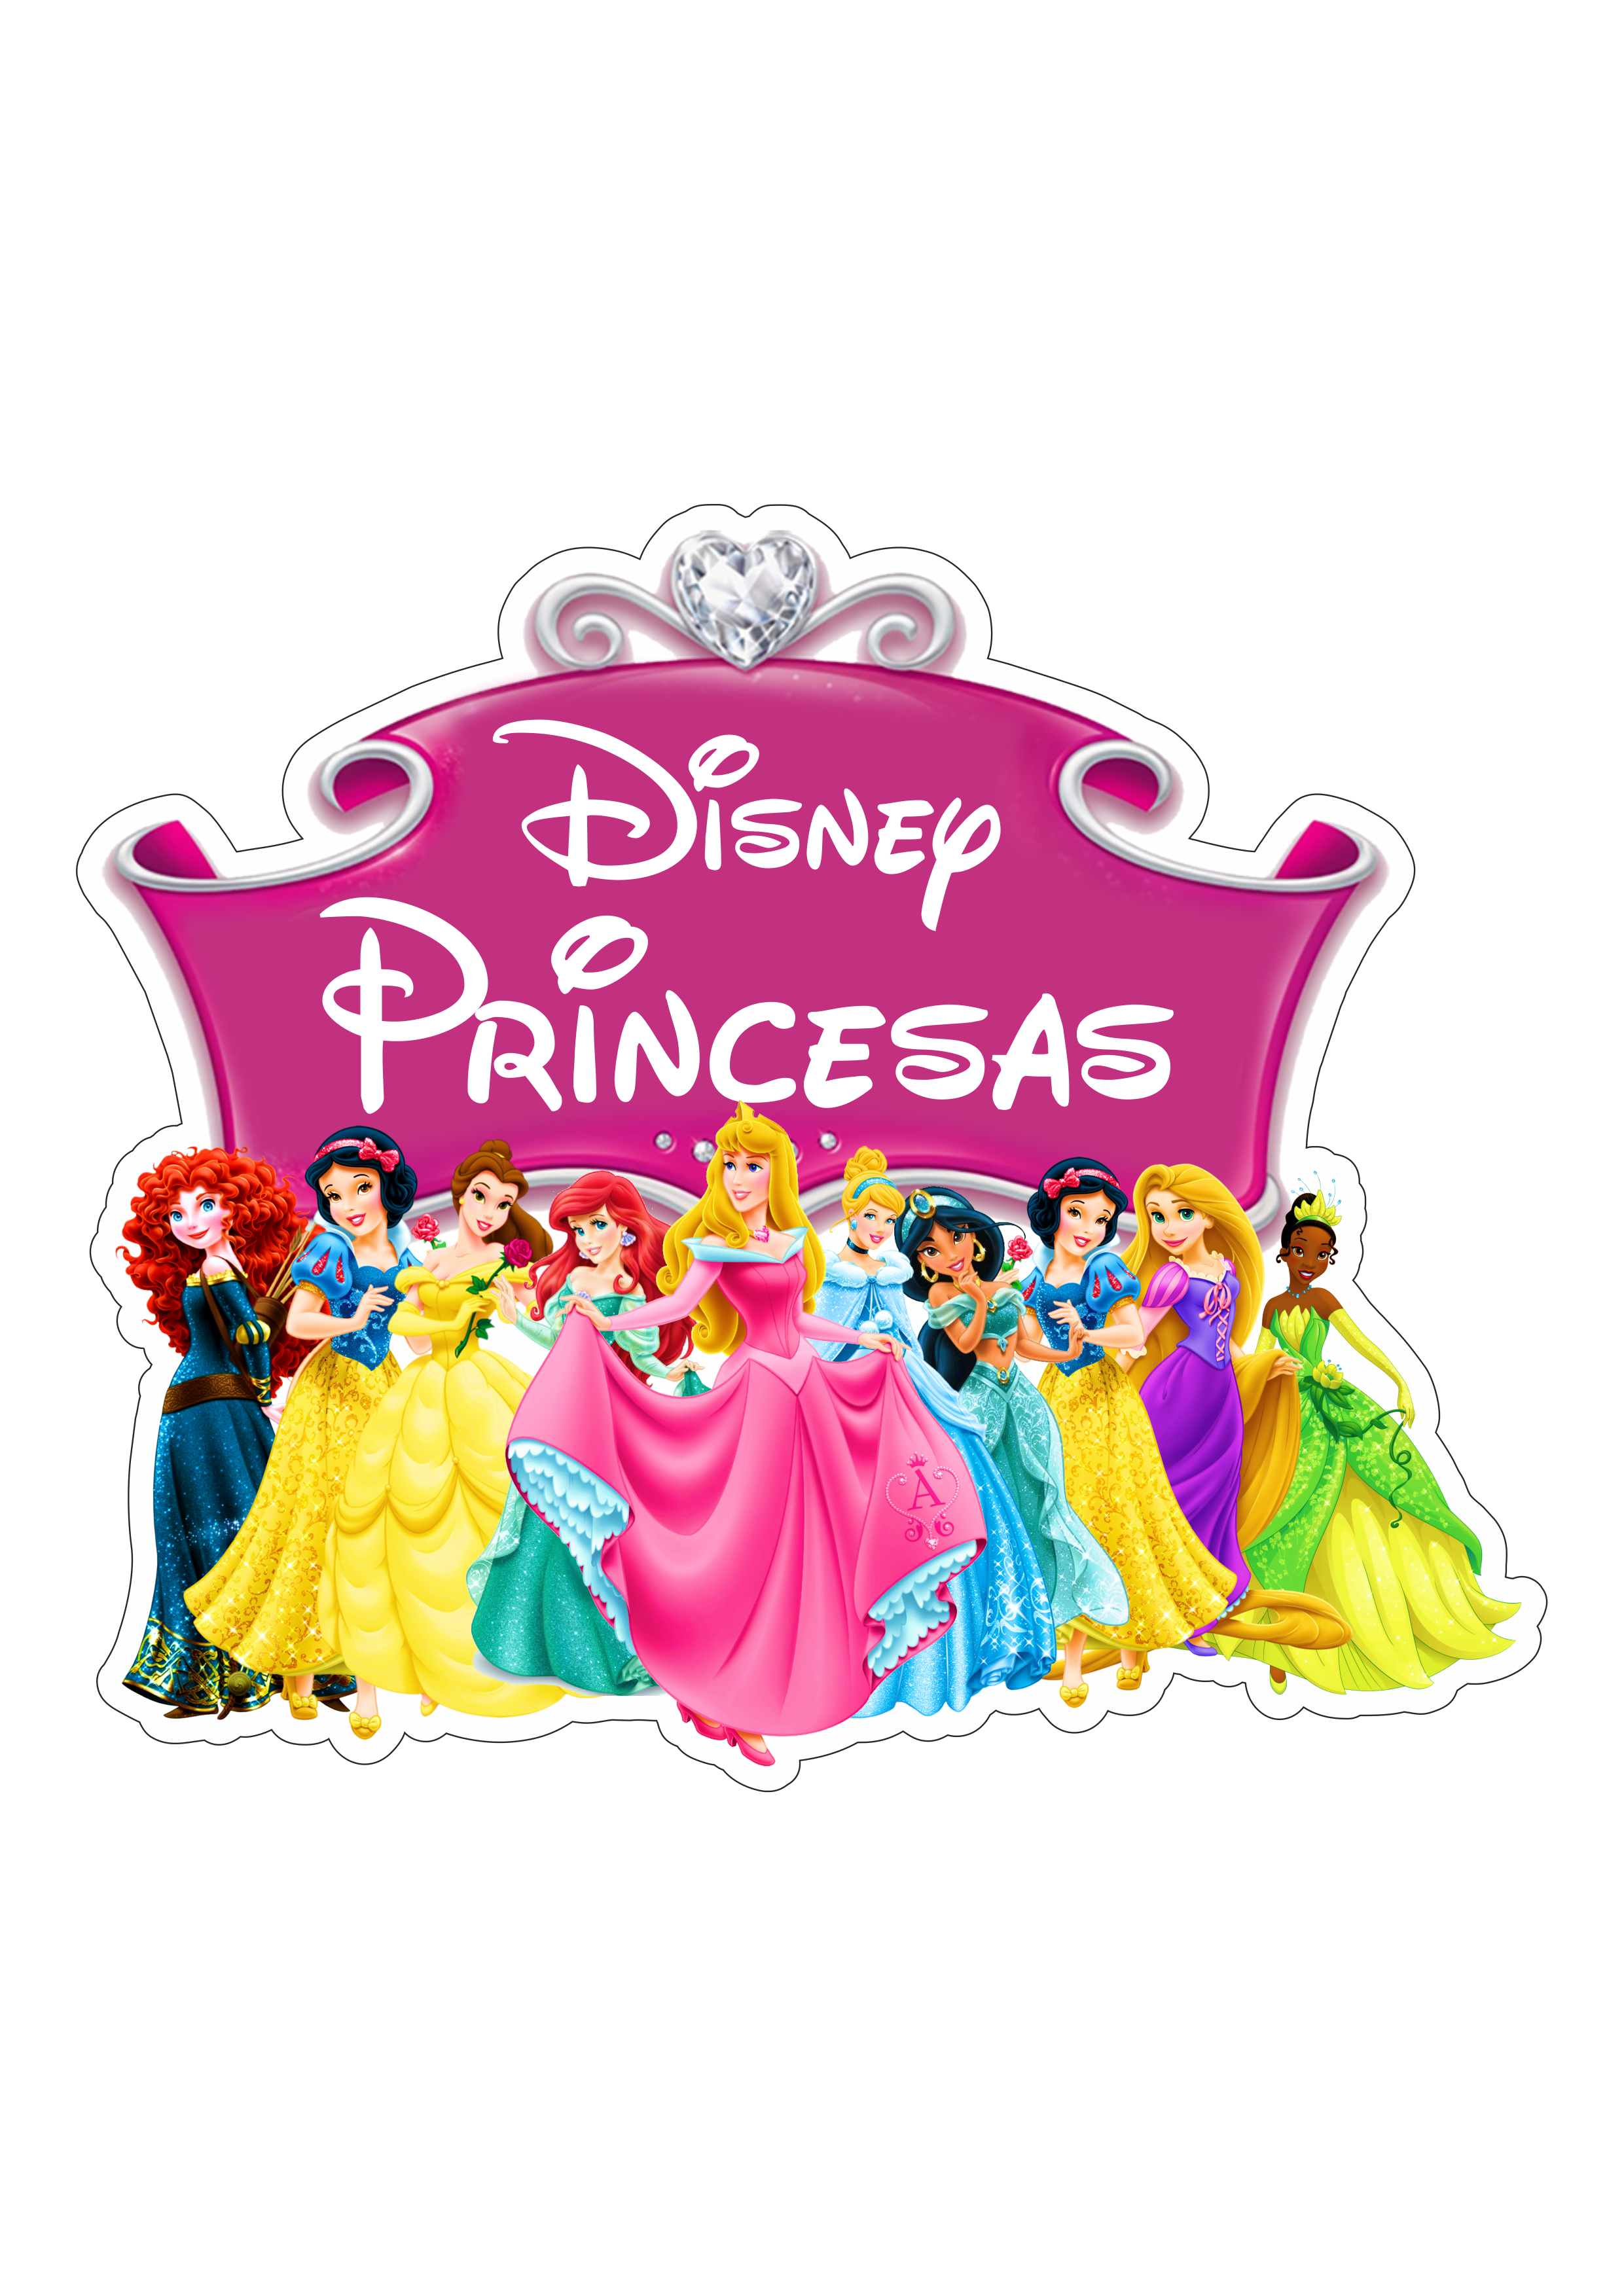 Princesas disney branca de neve merida bela ariel aurora cinderella jasmine rapunzel diana imagem fundo transparente logo png